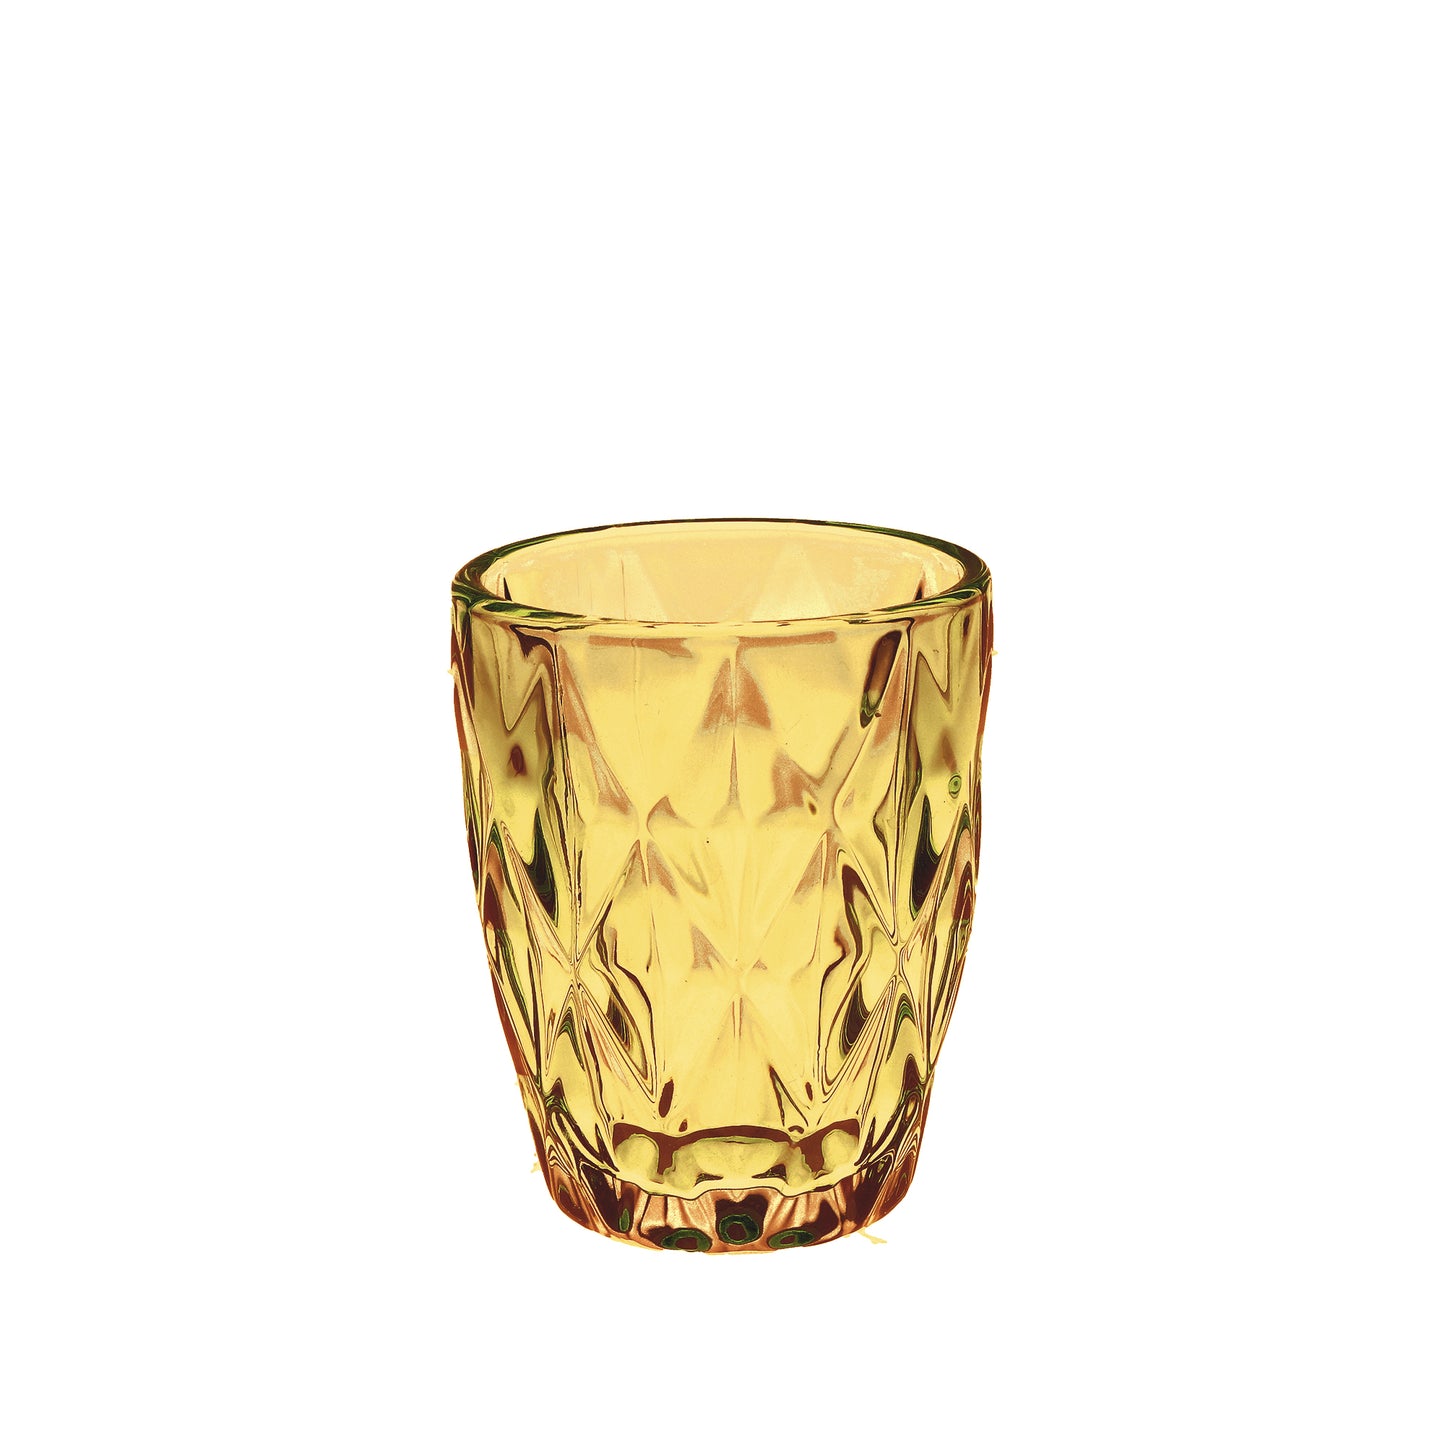 Confezione 6 bicchieri in vetro ambra cc 270 - Ø 8 - h 10 cm. Lavabili in lavastoviglie